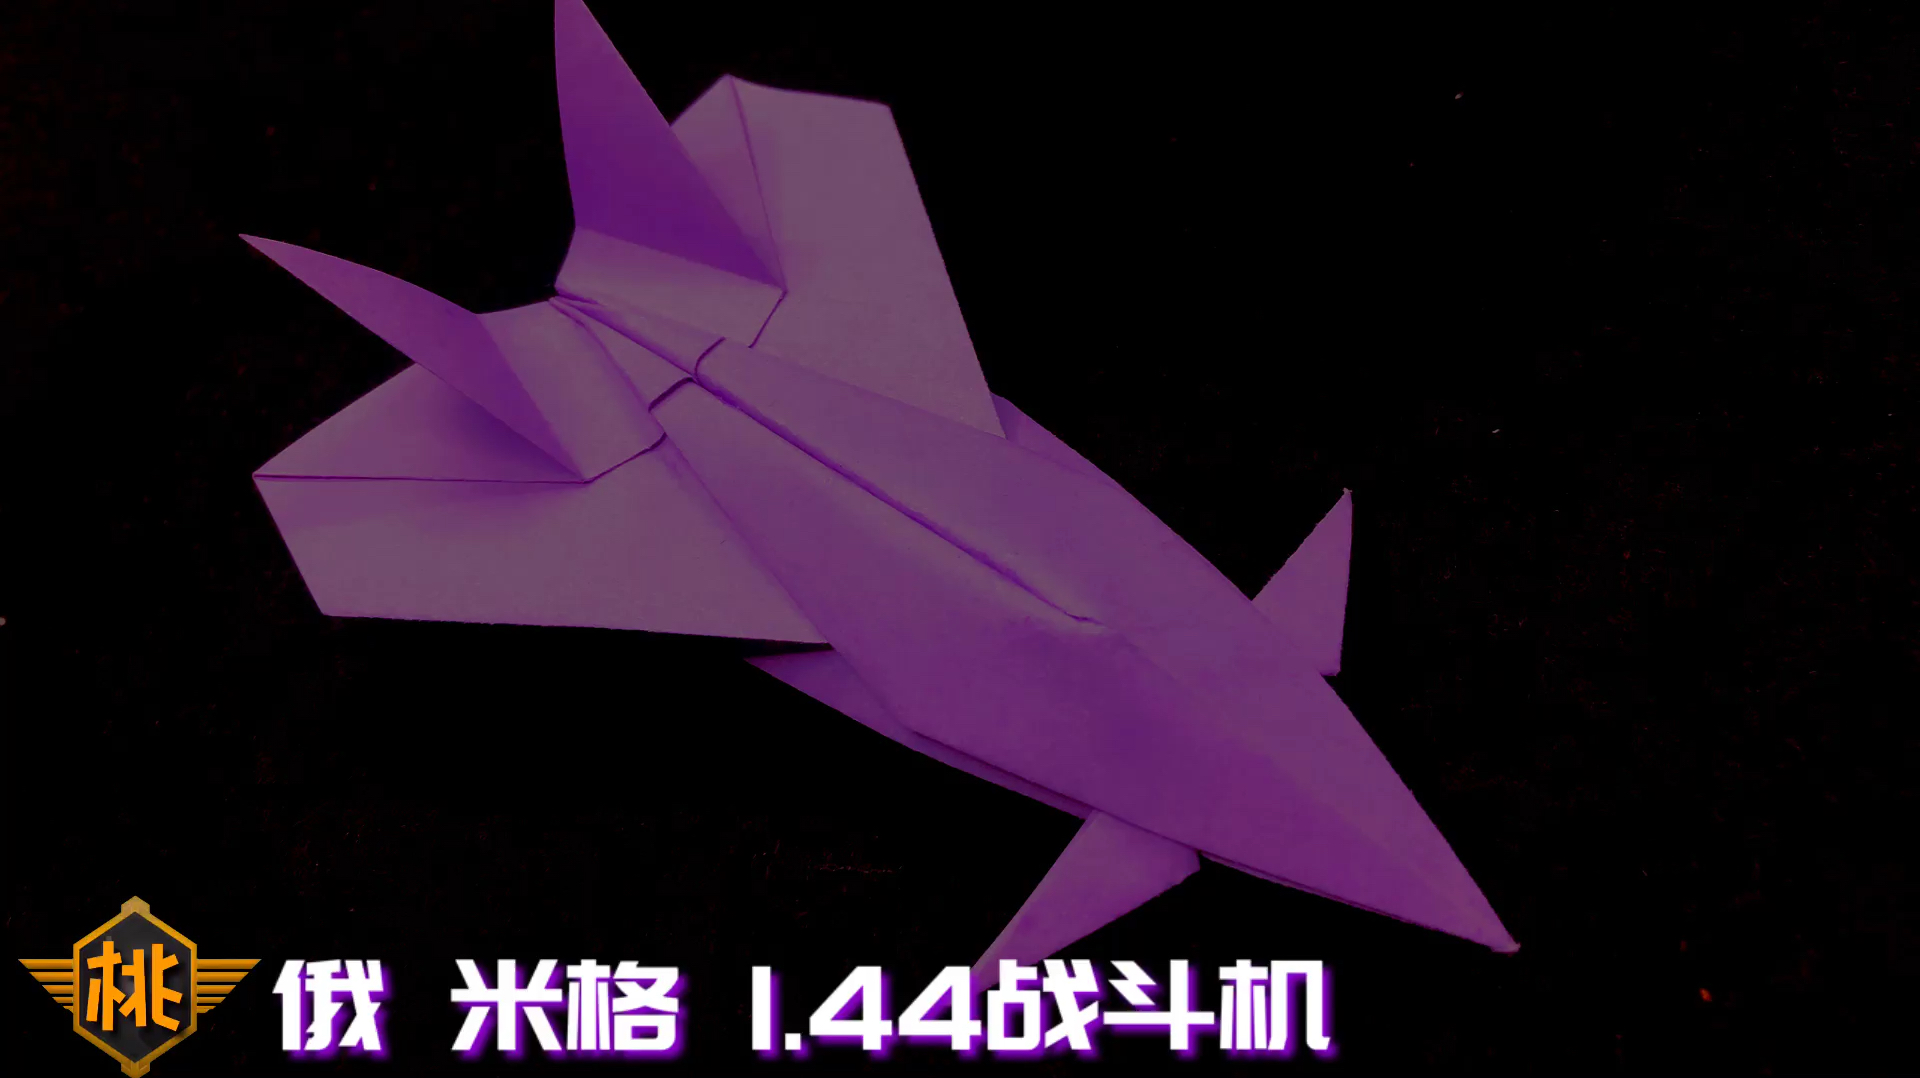 44战斗机,高逼格的纸飞机模型